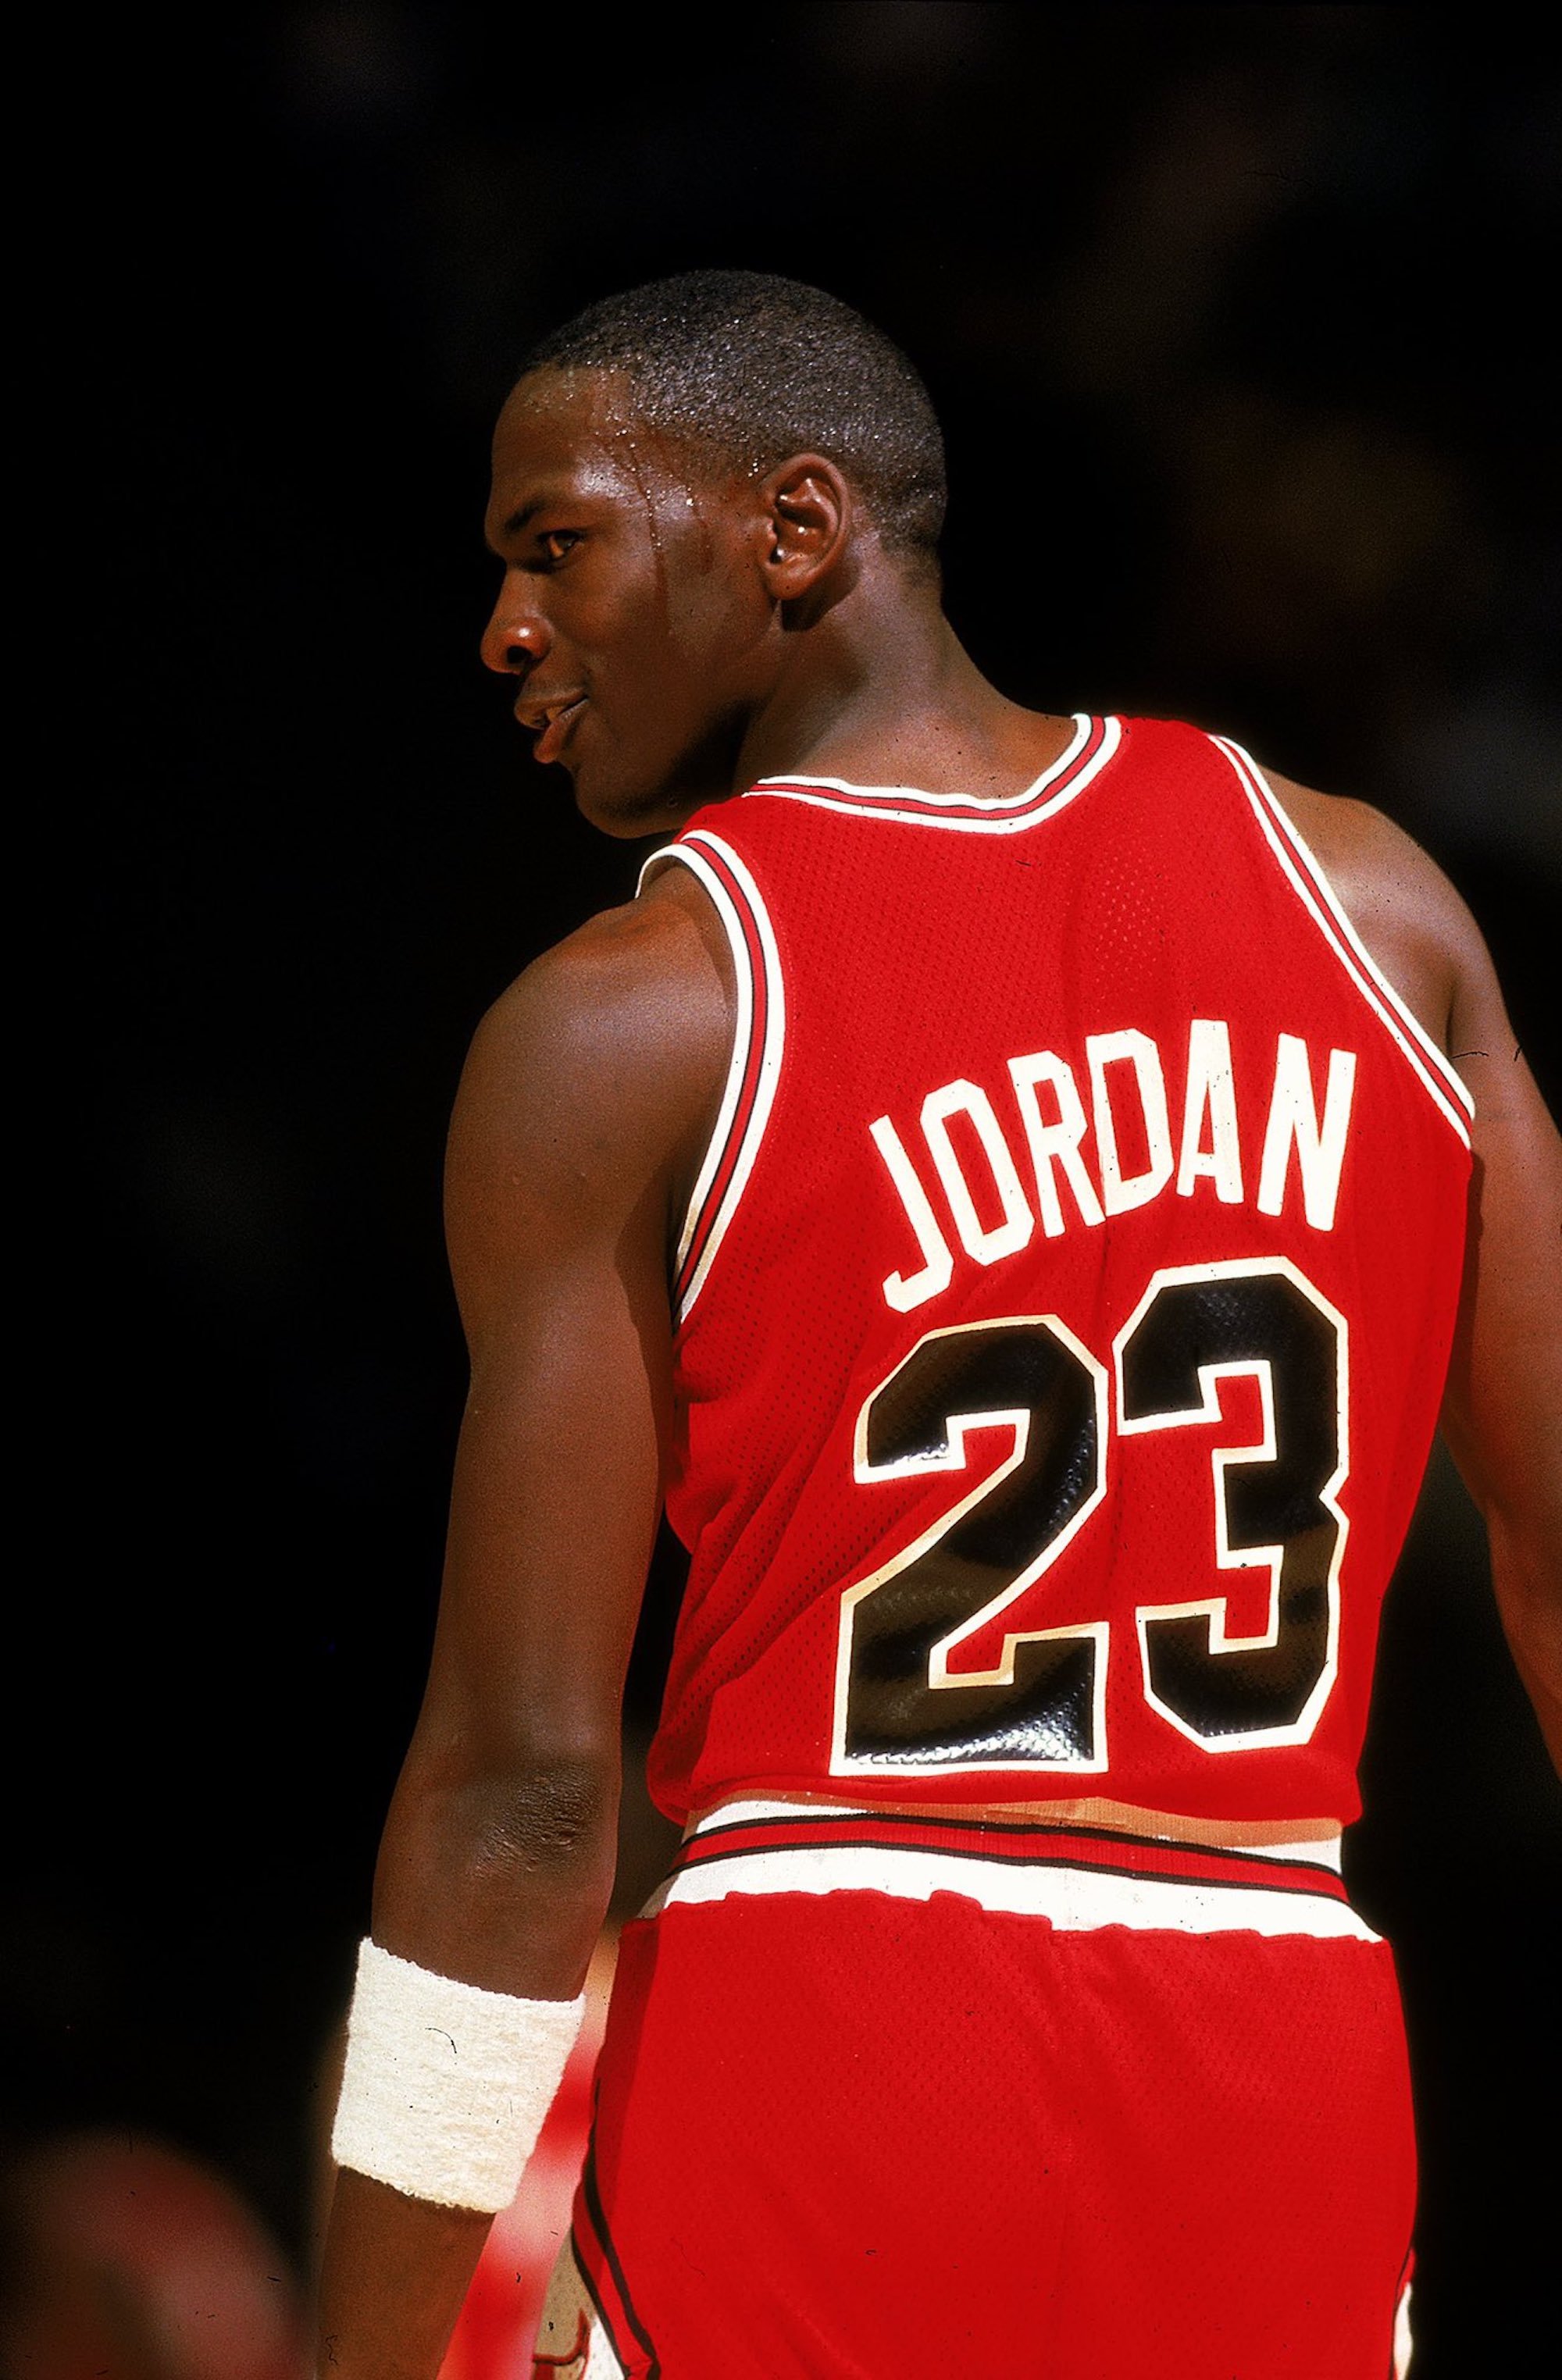 Totes les falsedats del documental de Michael Jordan, segons el periodista Smith